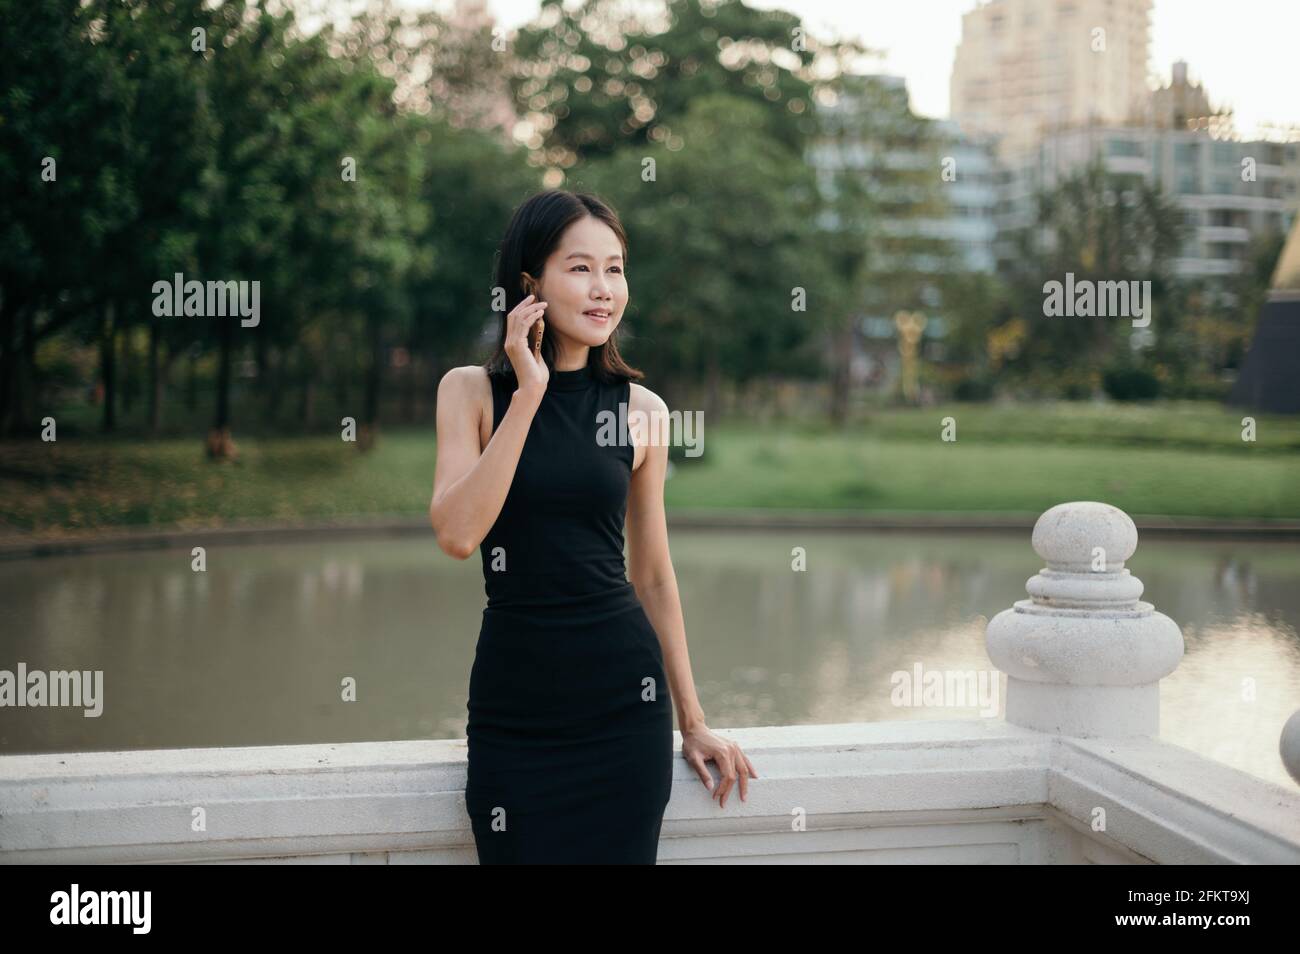 Une jeune femme d'affaires asiatique d'origine ethnique parle sur son téléphone mobile à l'extérieur dans un parc, avec des arbres et des bâtiments en arrière-plan. Banque D'Images